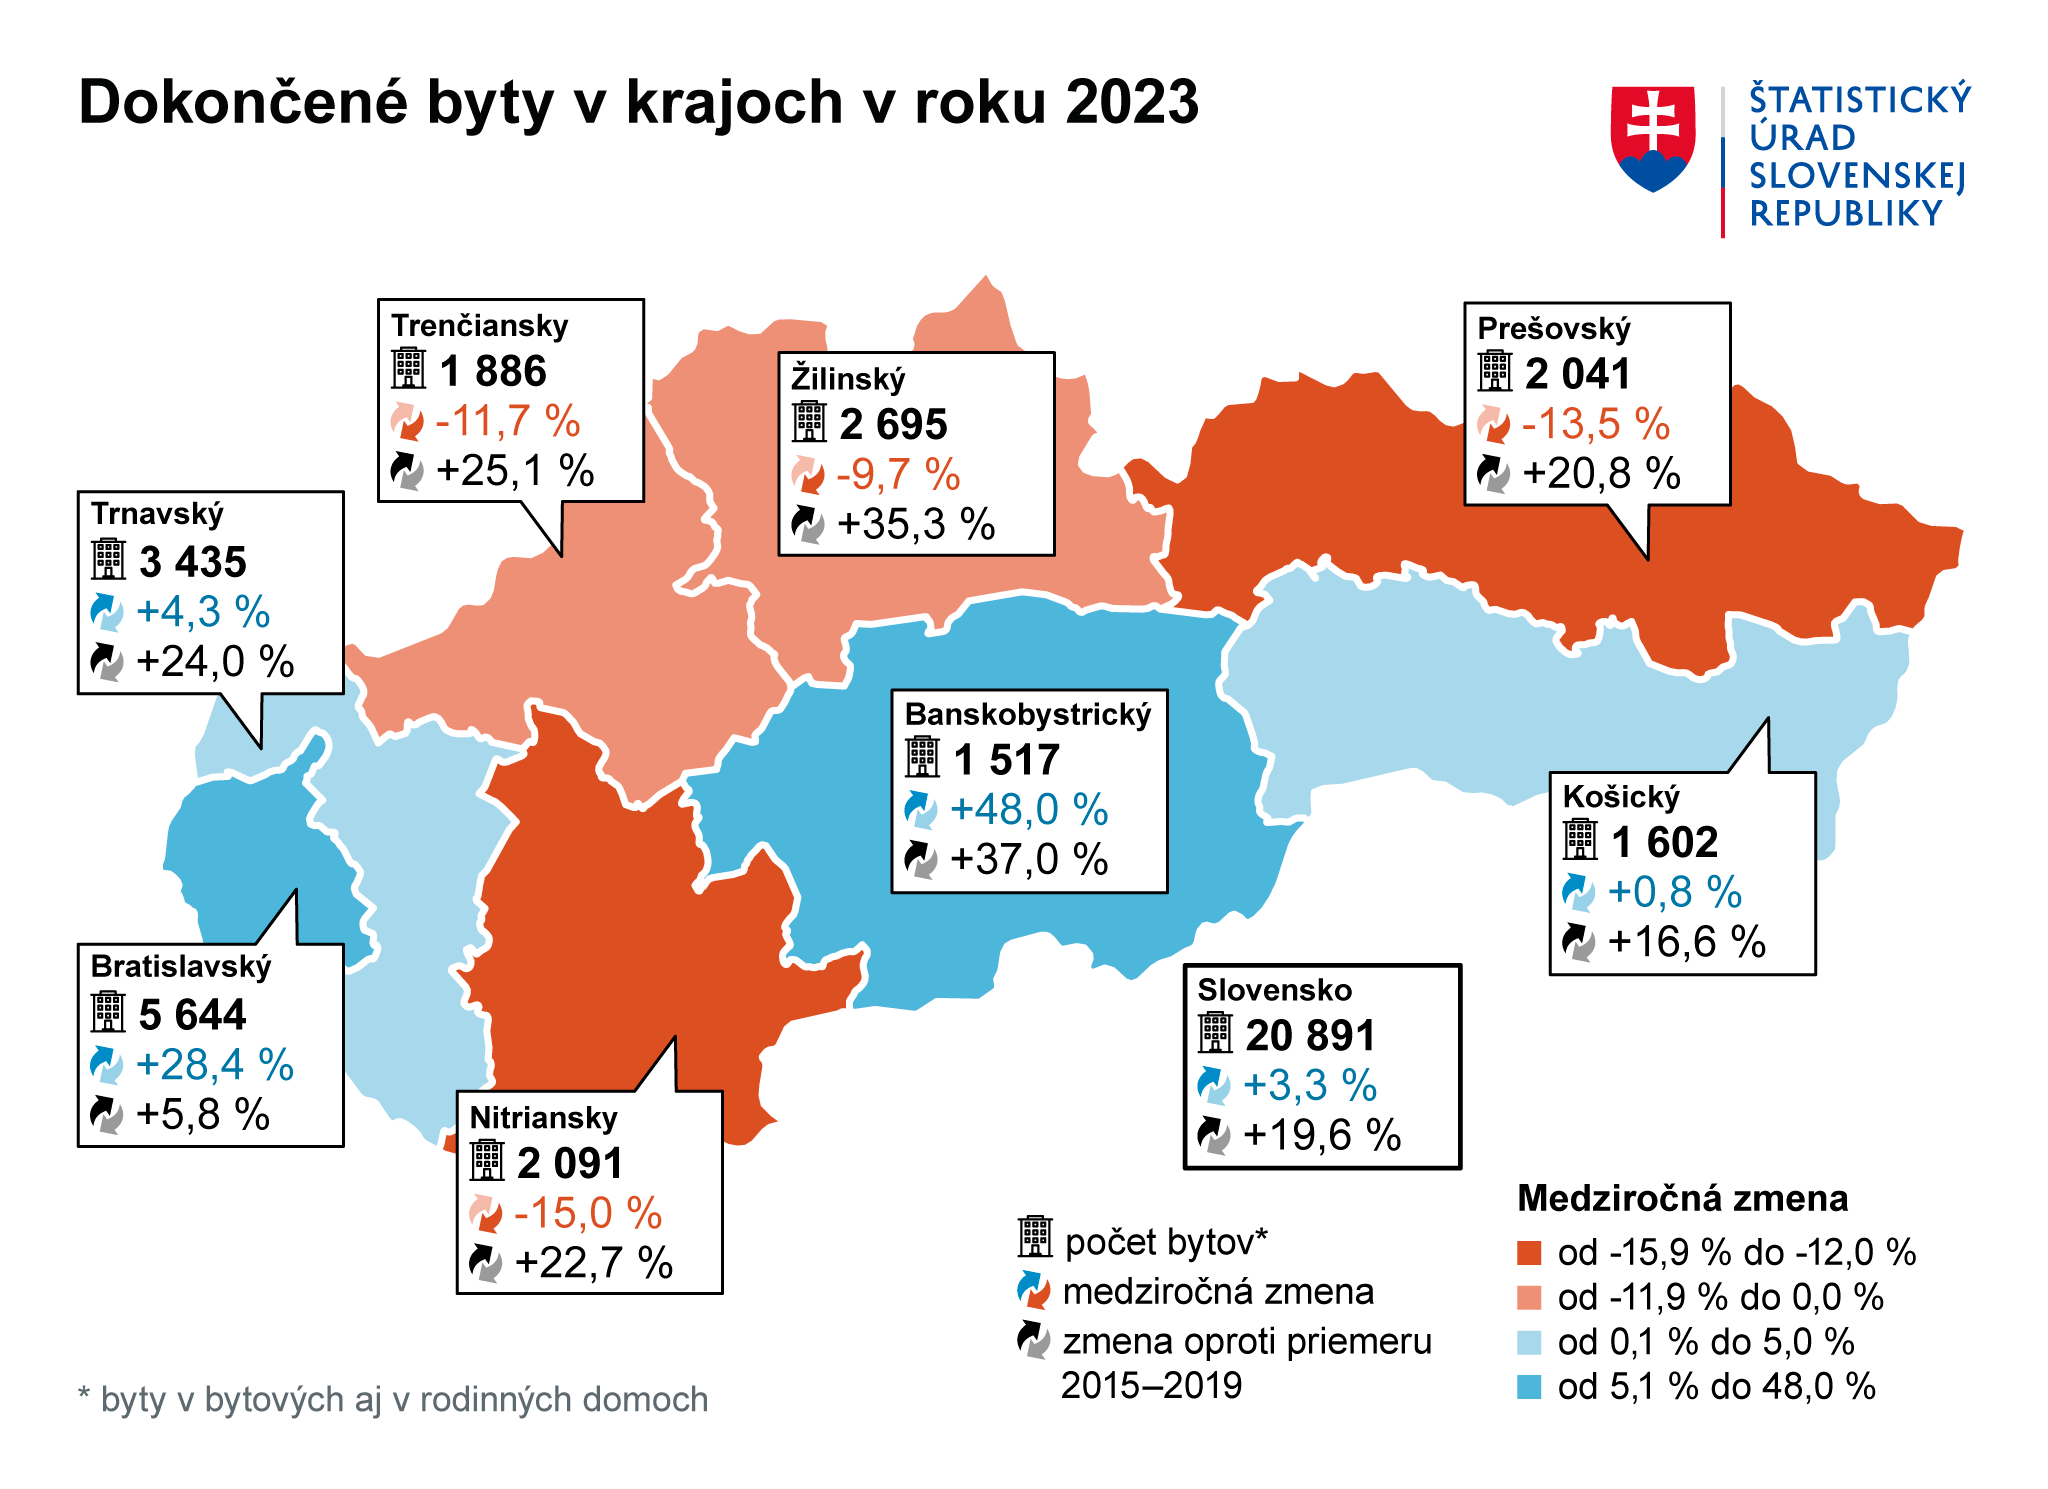 Количество новых объектов недвижимости, построенных в регионах Словакии в 2023 году. Источник: Статистическое управление